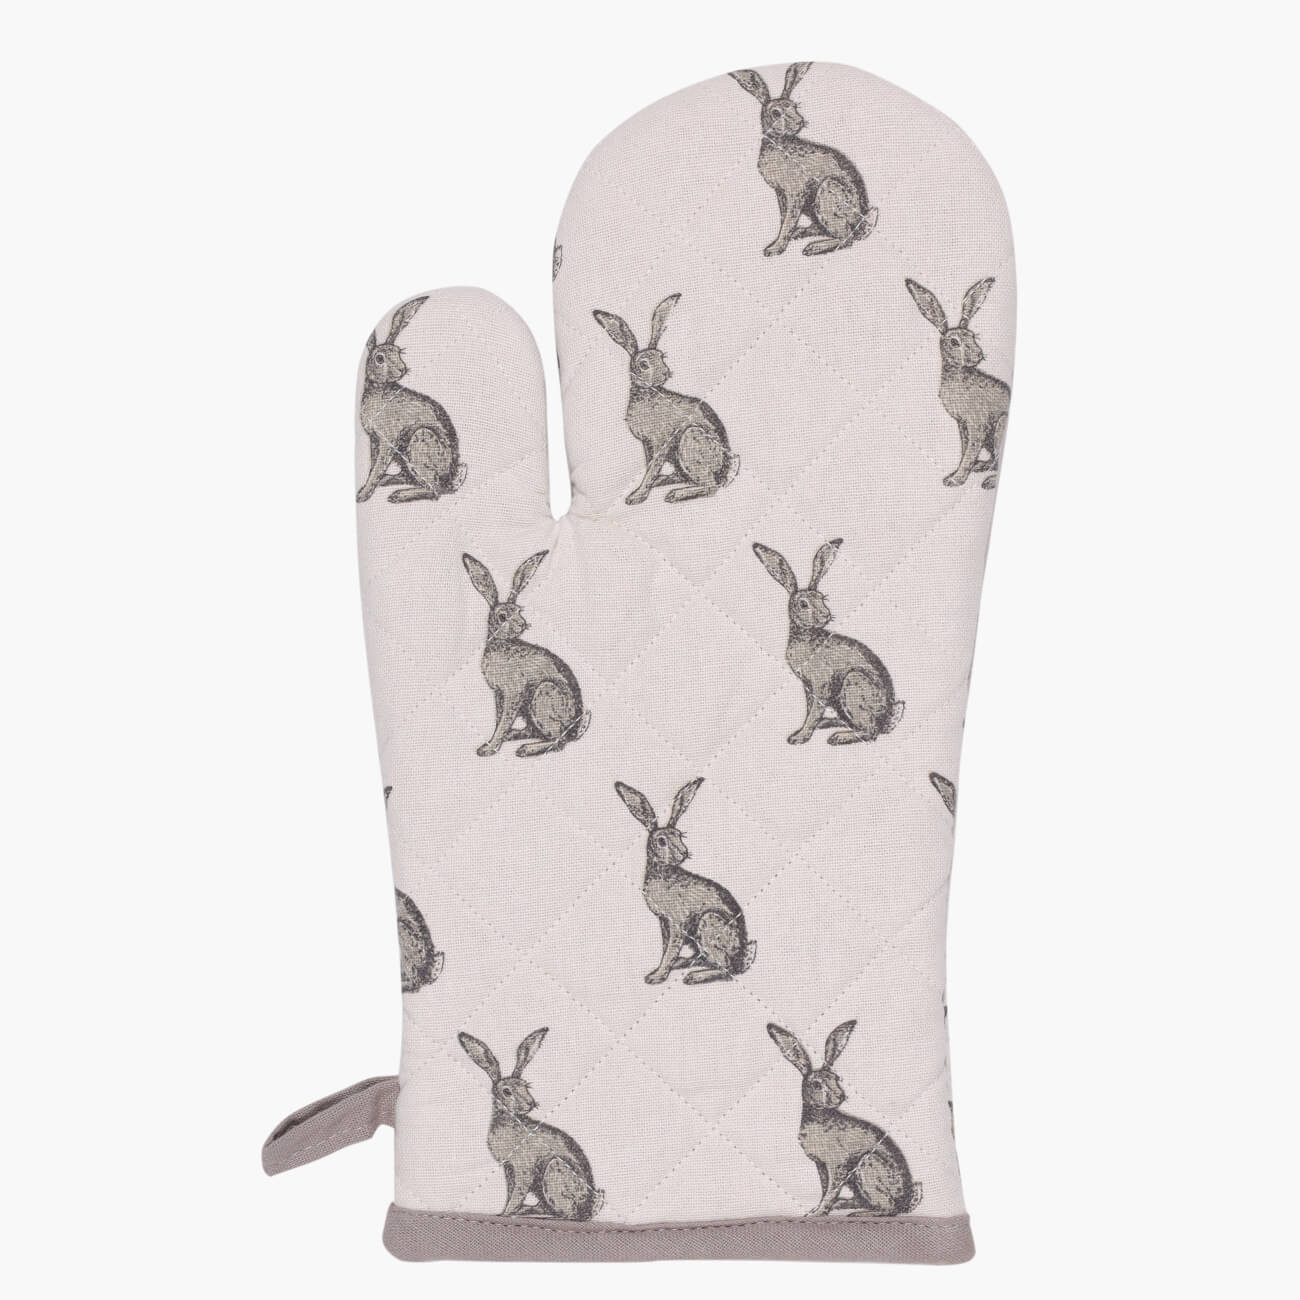 Прихватка-варежка, 17x33 см, хлопок, белая, Кролик, Rabbit grey изображение № 1